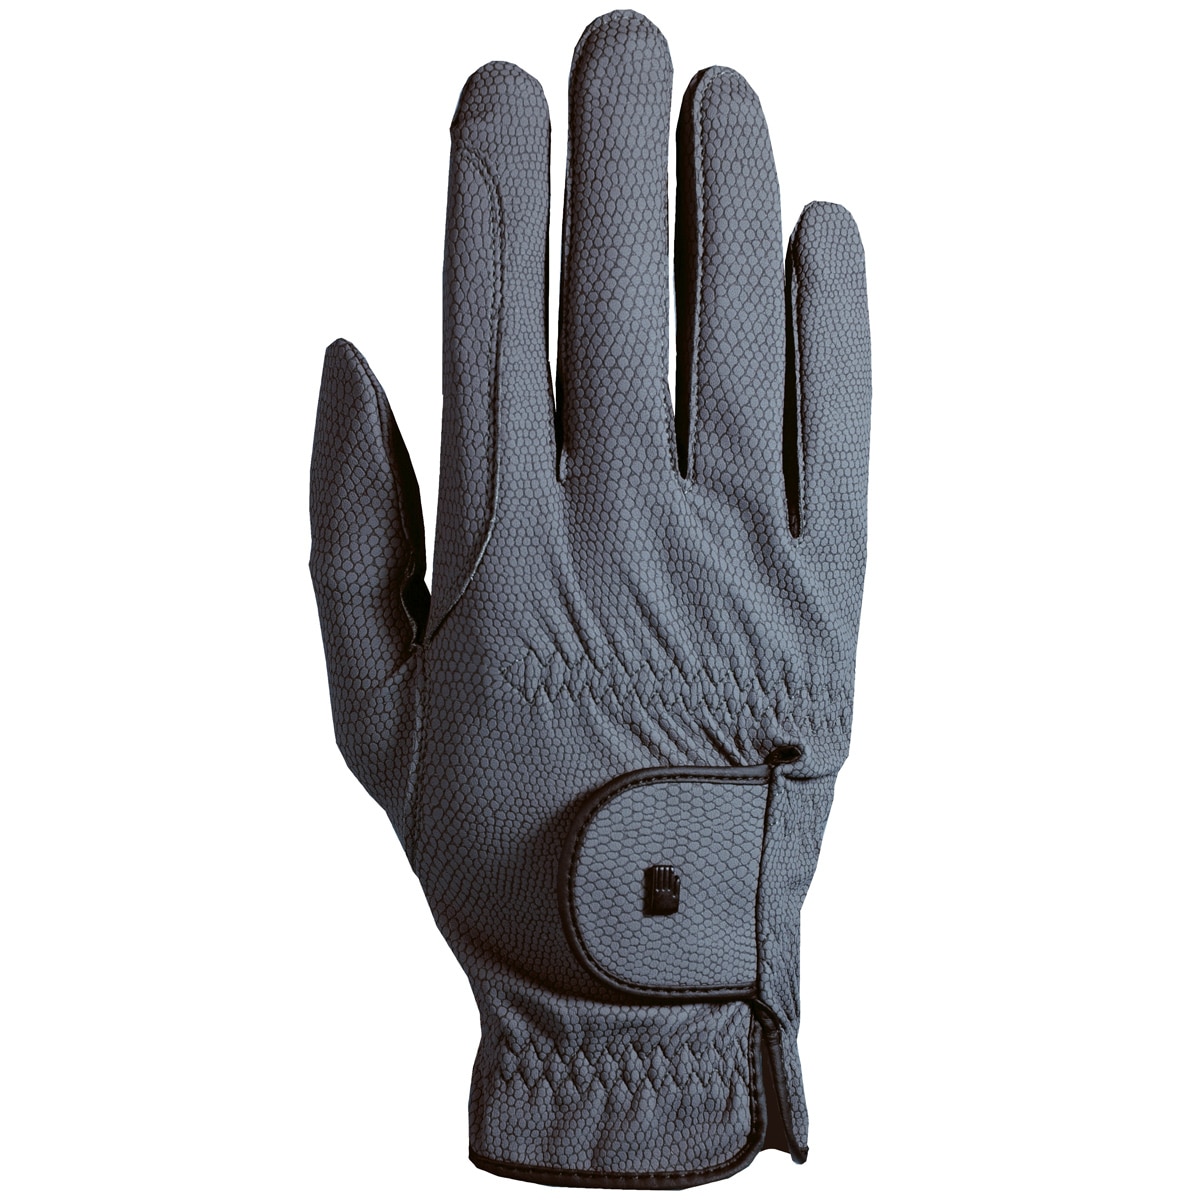 ROECKL #228 ISAGA Glove Black-White Size 7 